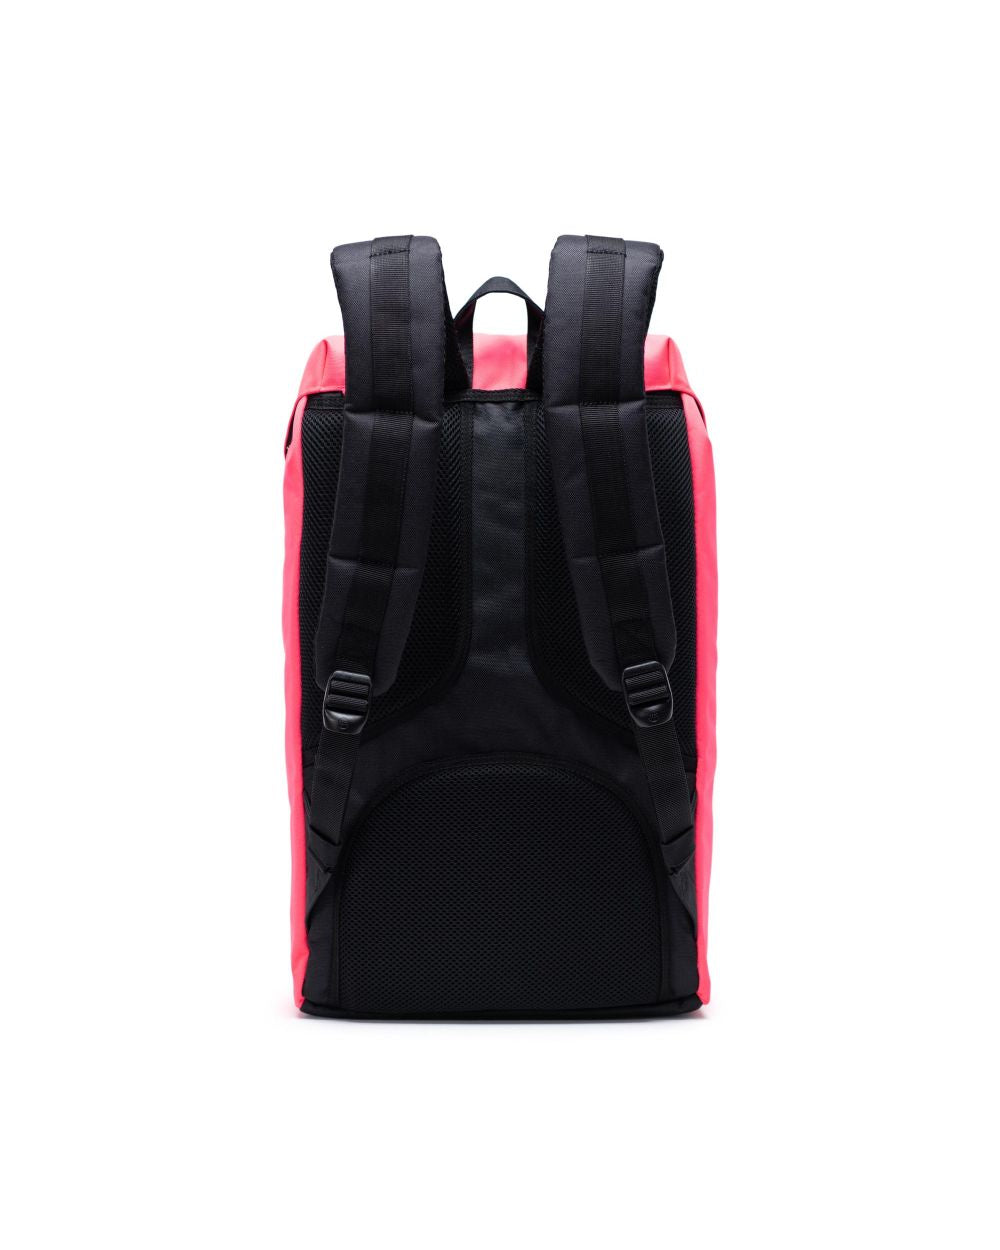 Herschel Supply Co. Herschel Little America Backpack - Neon Pink/Black